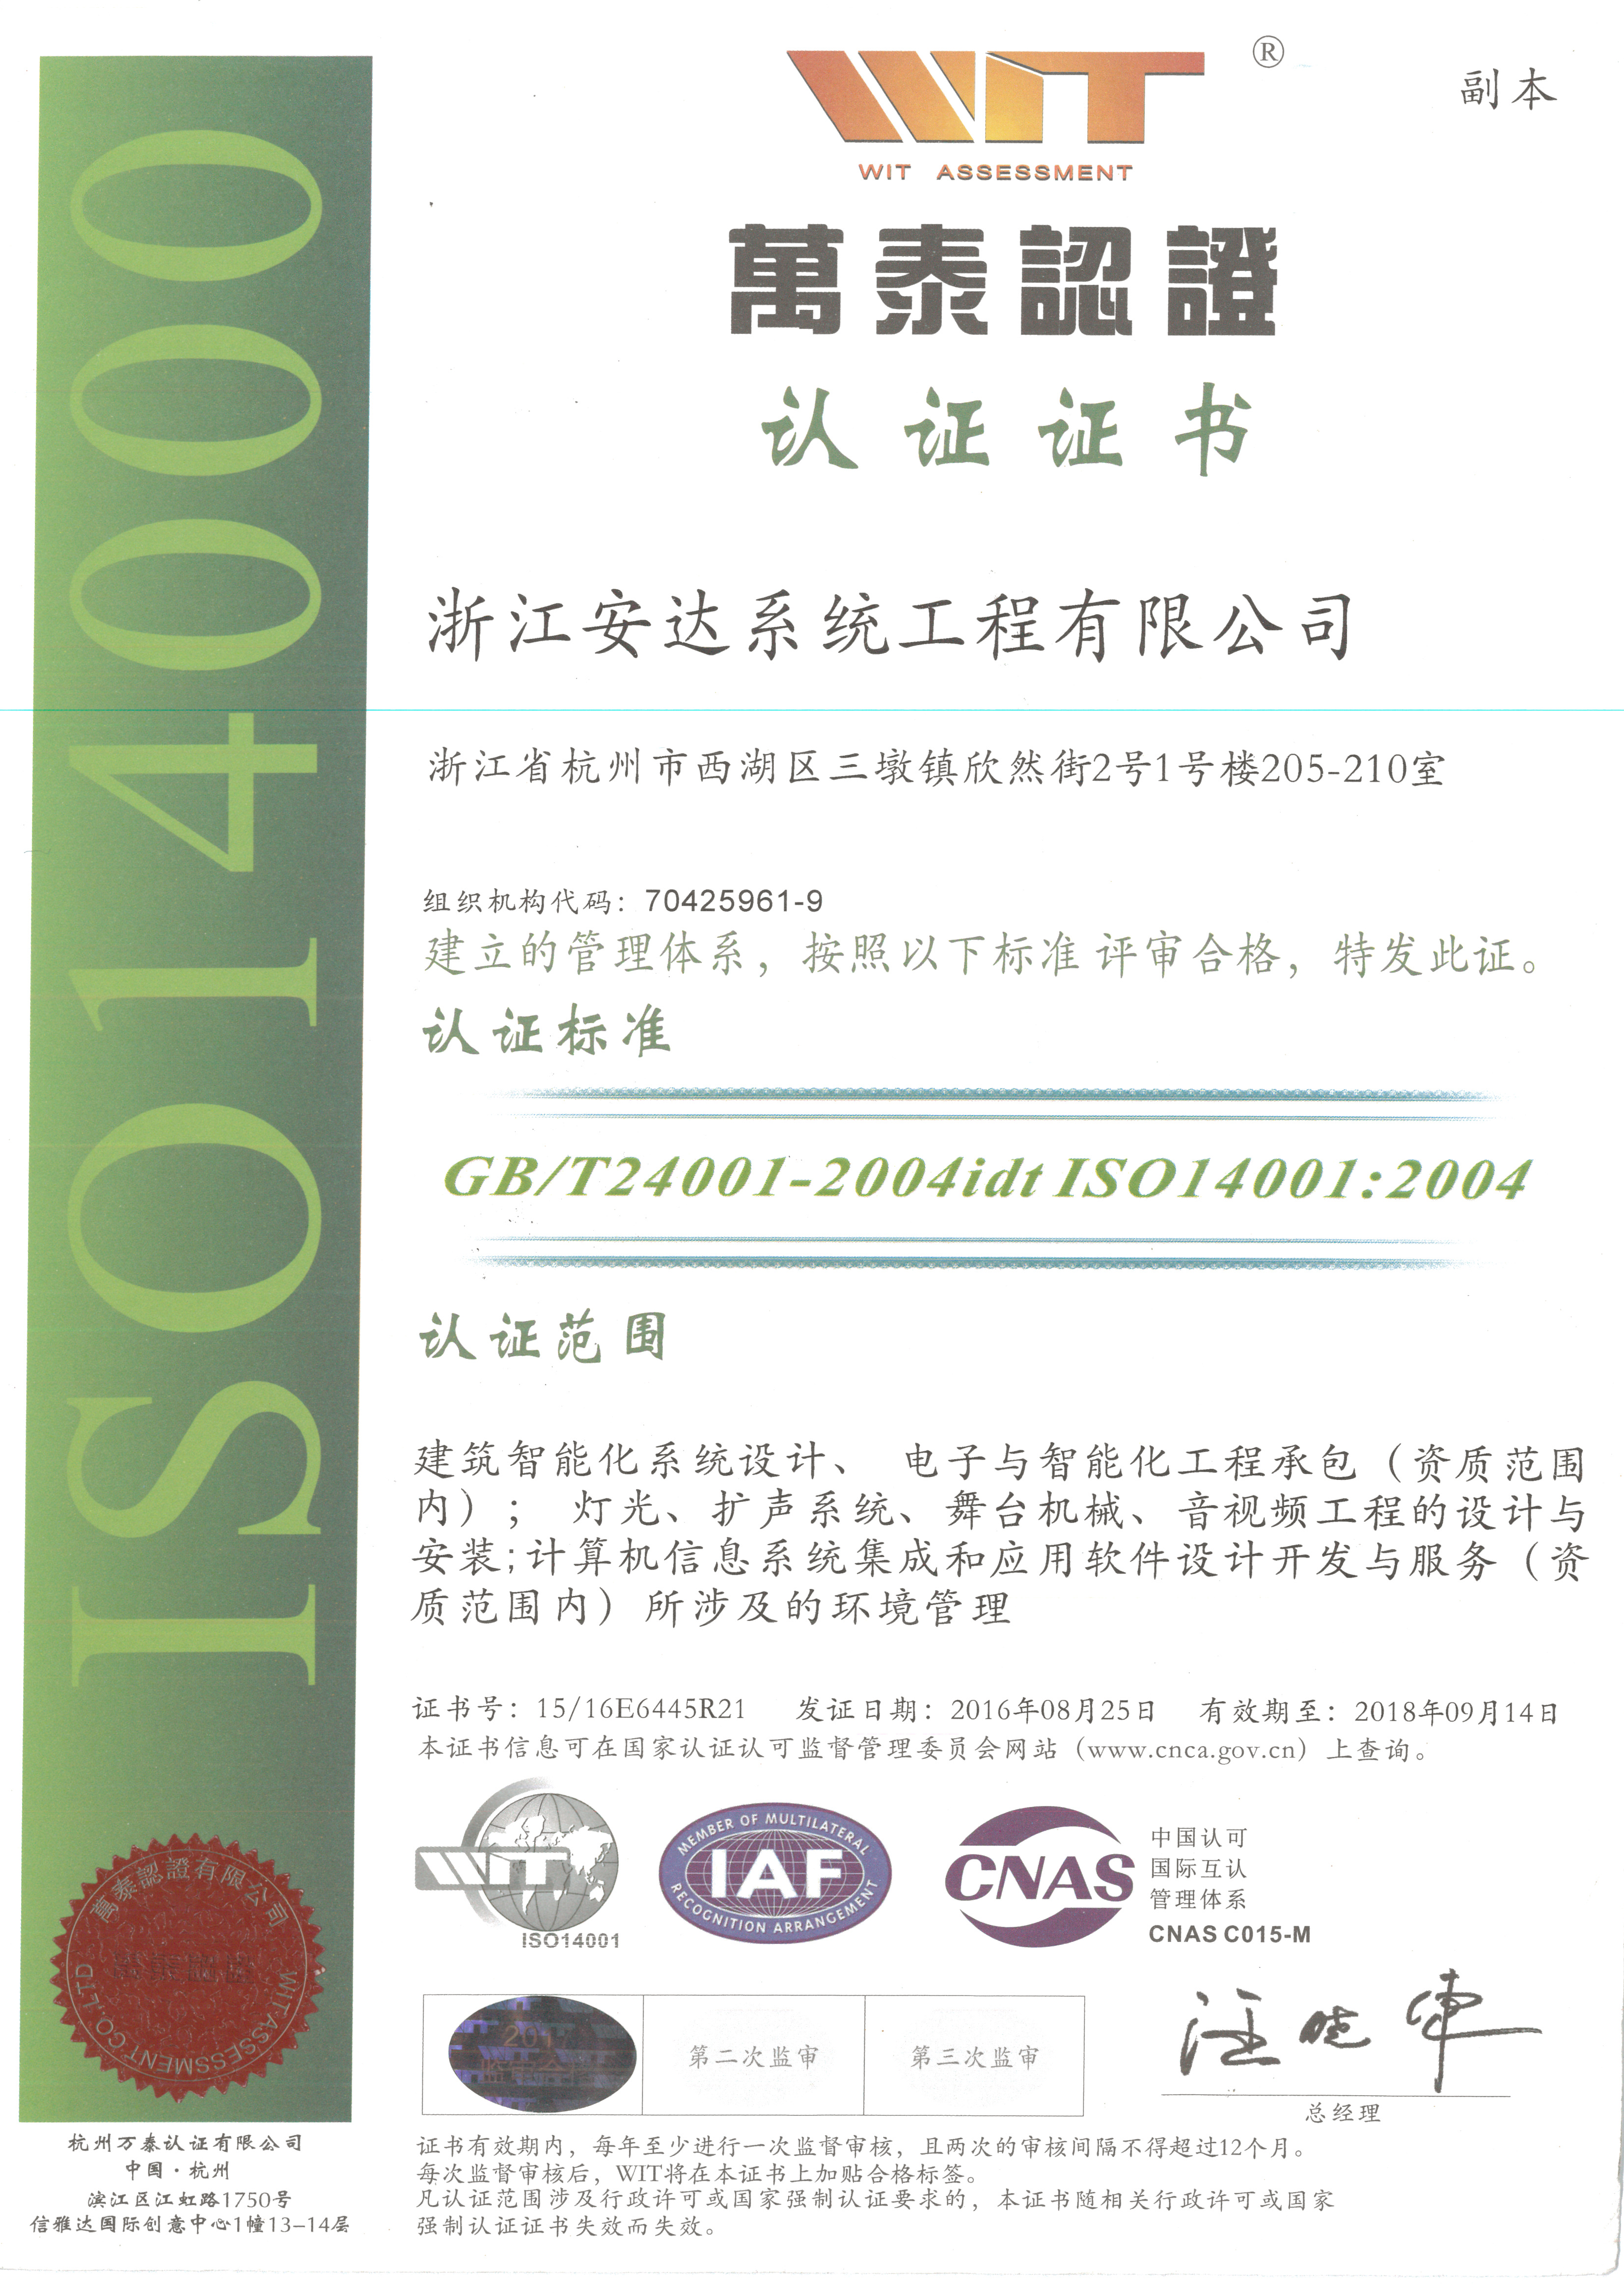 GB/T28001-2001 IDT OHSAS 18001:2007